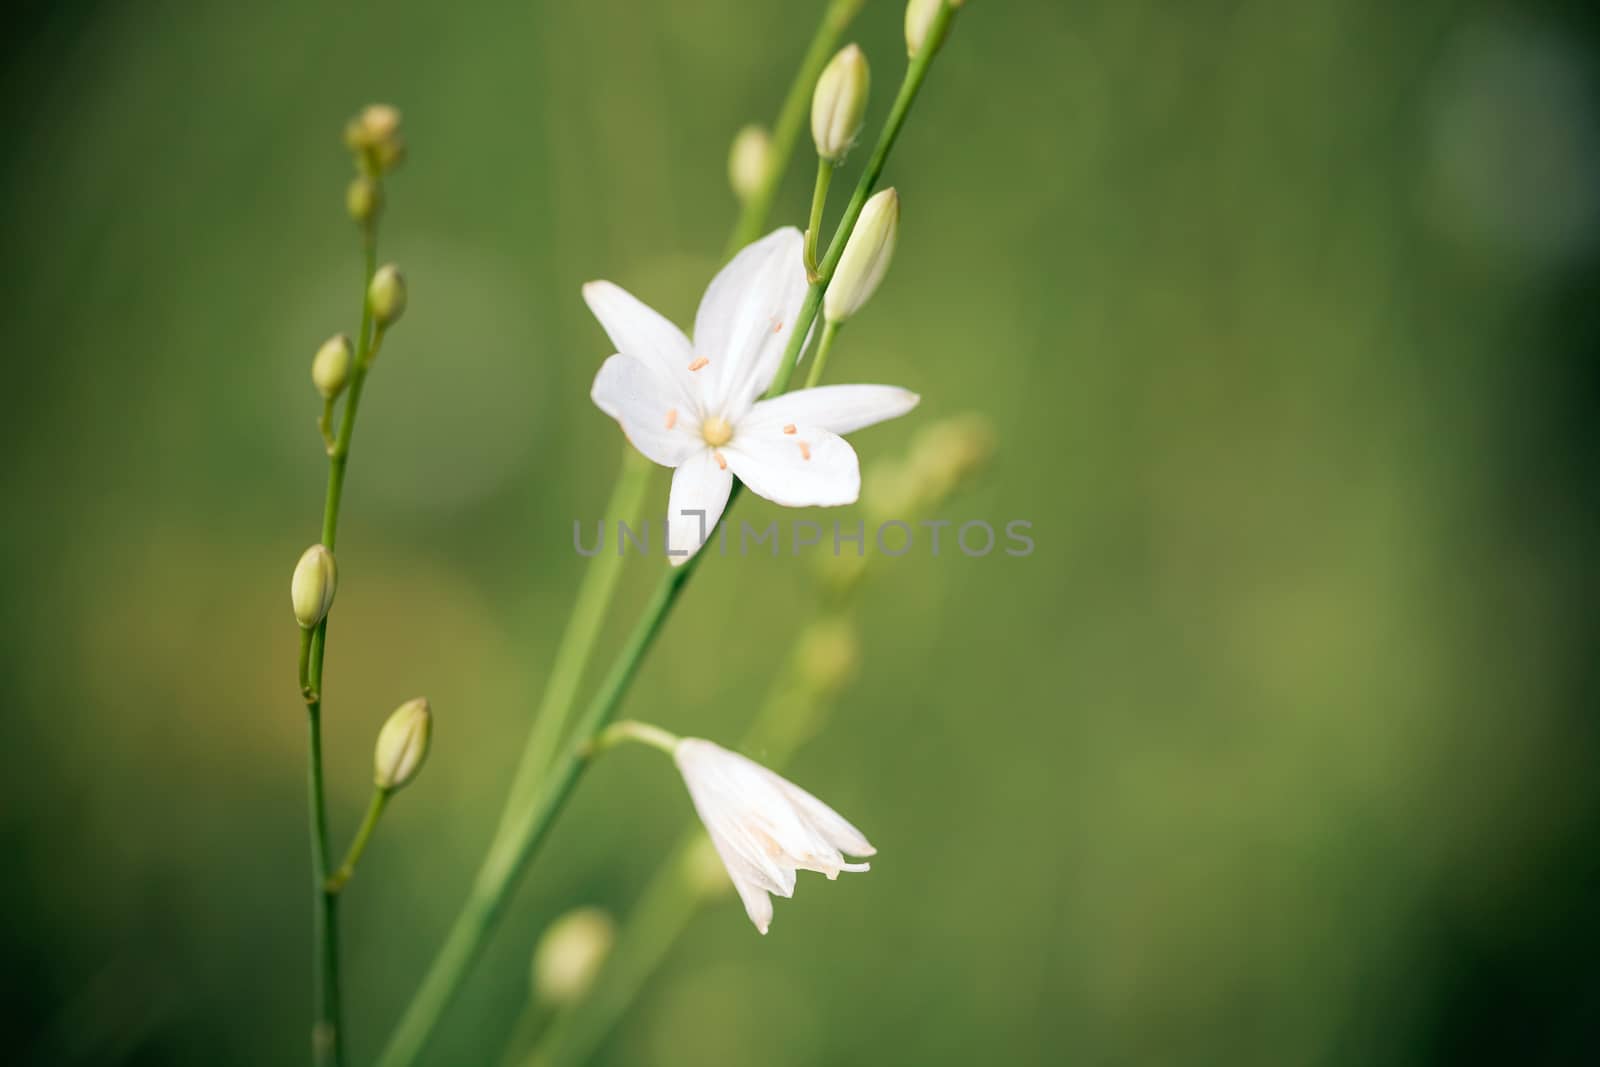 Beatiful wild flower in green meadow by PixAchi